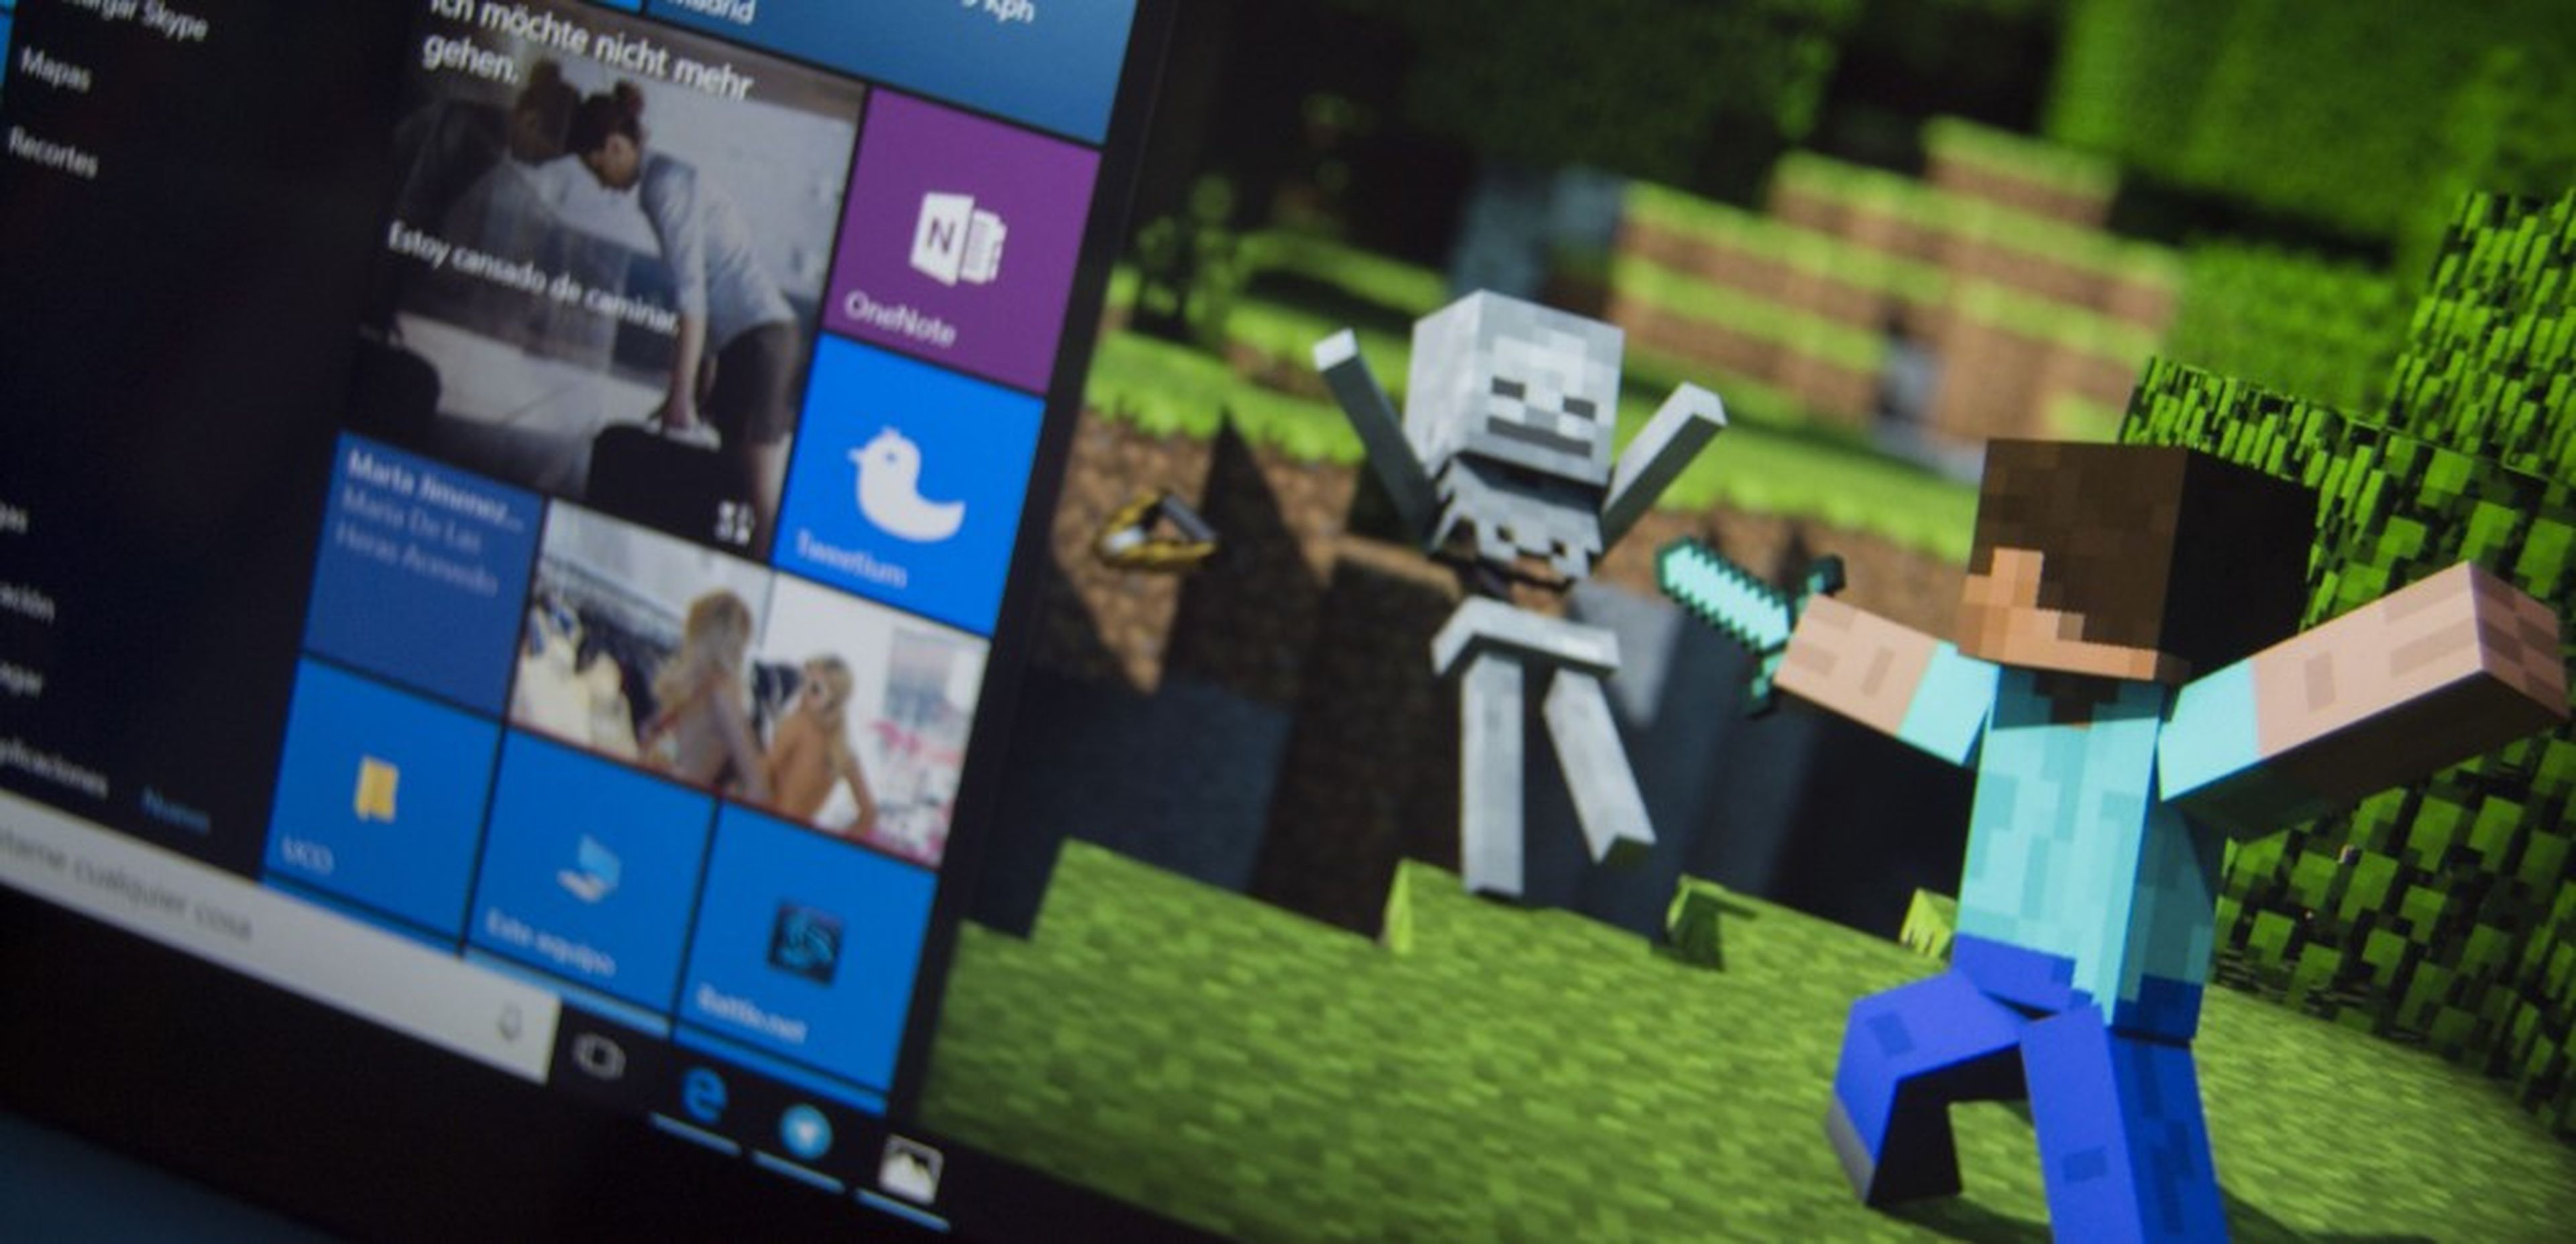 Minecraft Windows 10 Edition Beta, cómo conseguirlo gratis